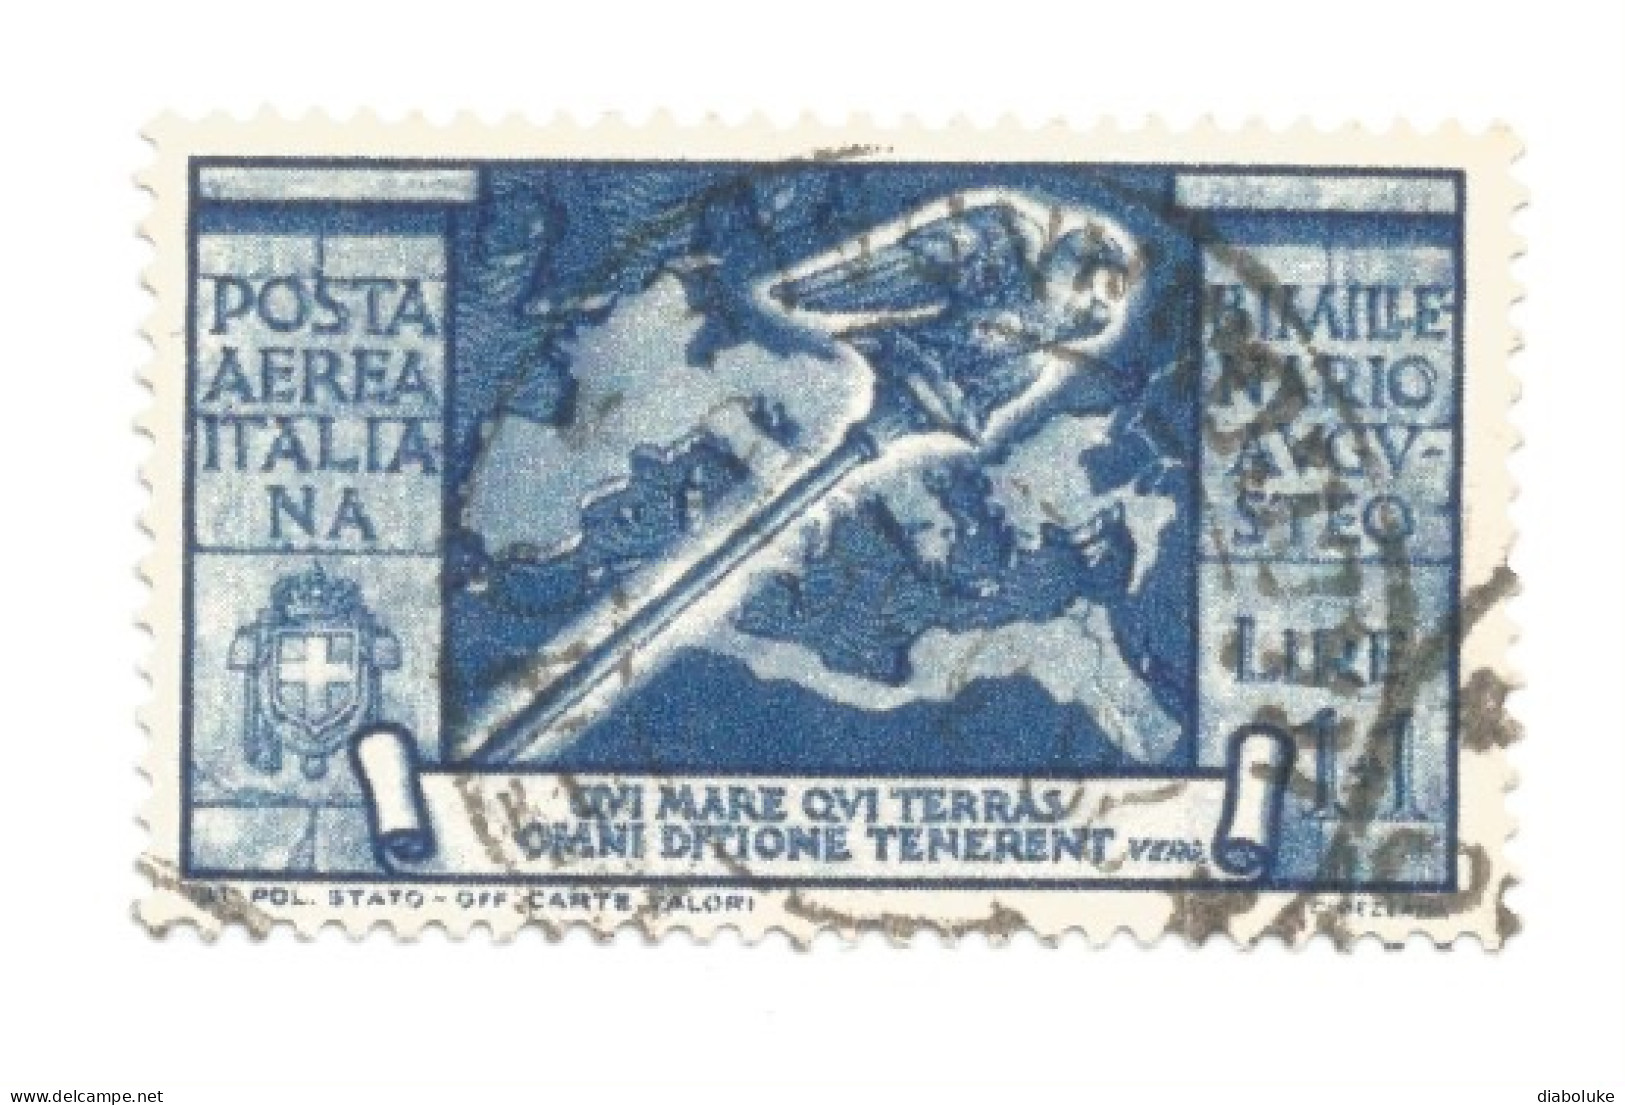 (REGNO D'ITALIA) 1937, BIMILLENARIO AUGUSTEO CON POSTA AEREA - Serie di 15 francobolli usati, annulli da periziare